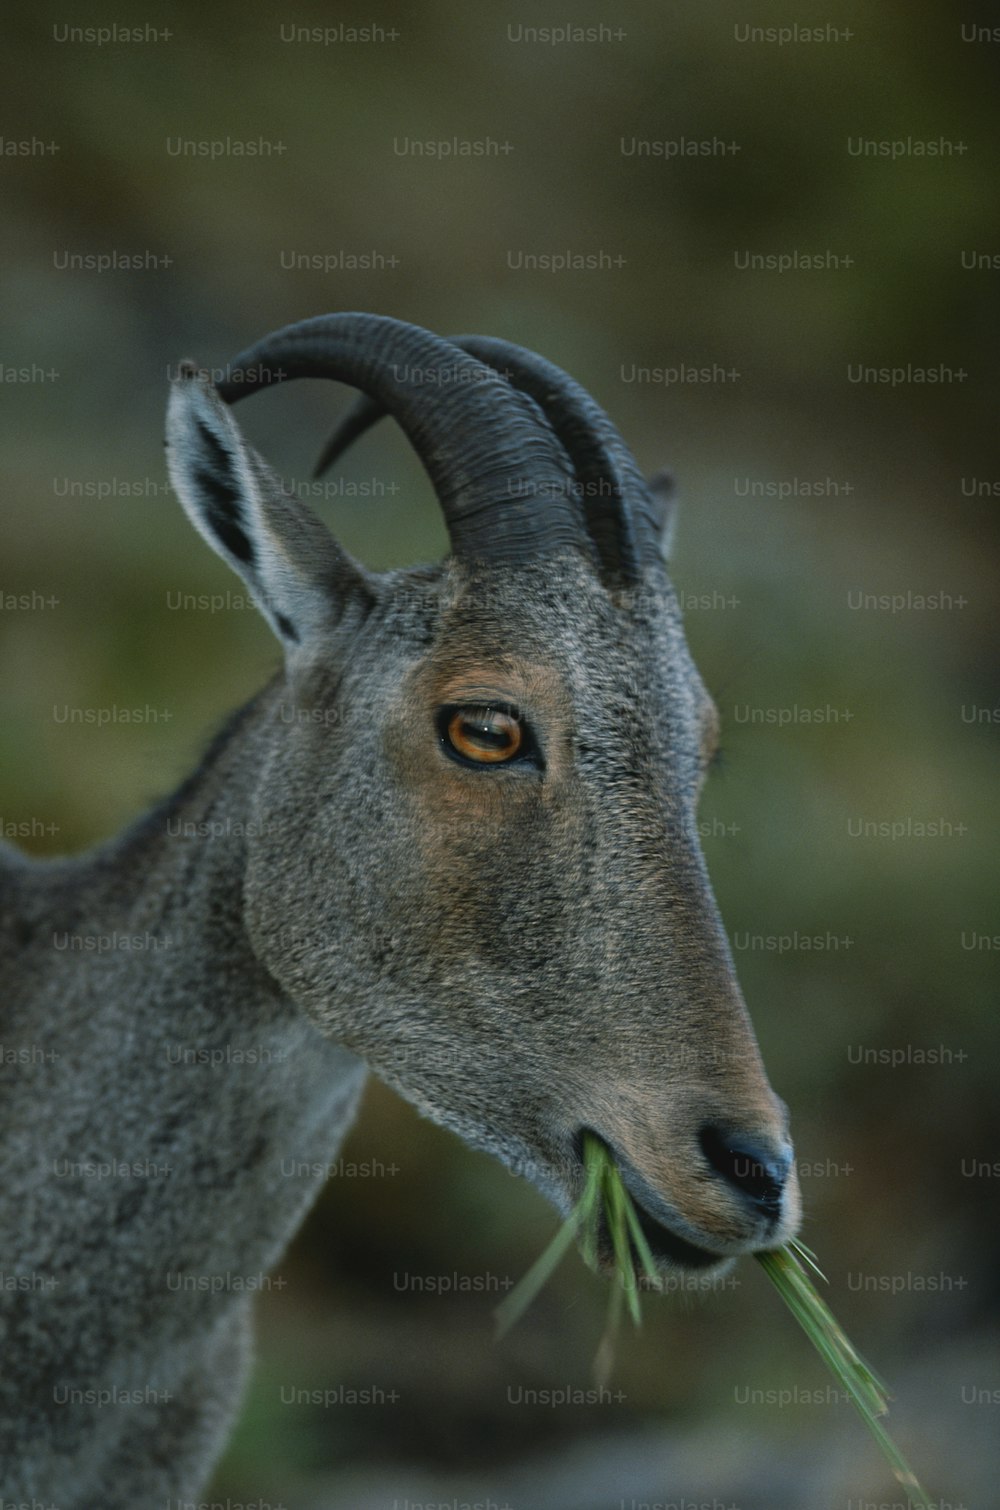 Un primer plano de una cabra con hierba en la boca